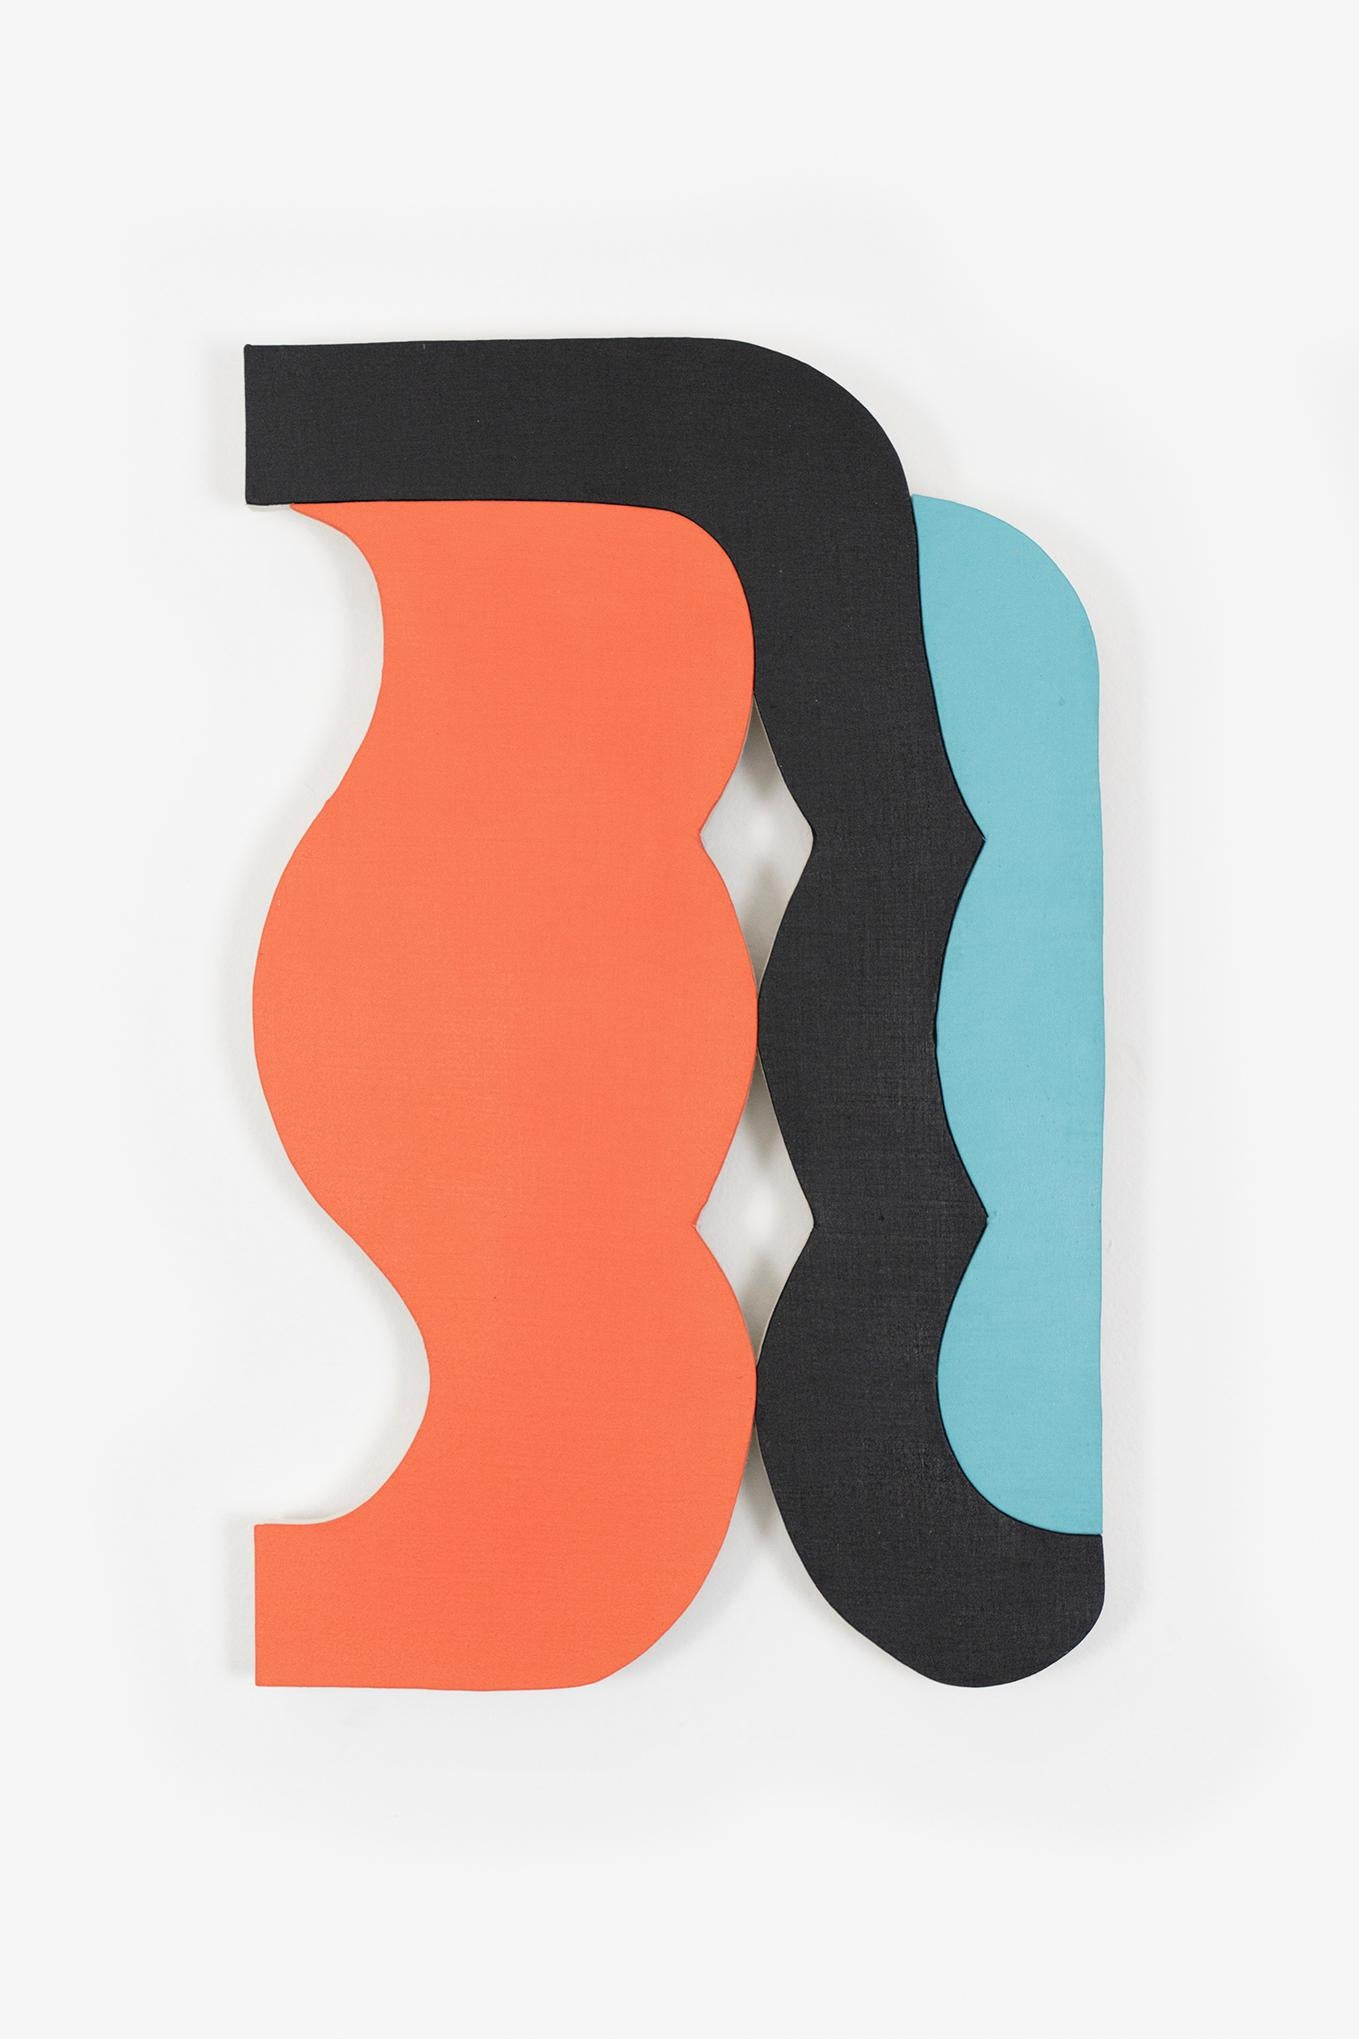 Jason Matherly Abstract Sculpture – „21-9“ Wandskulptur – orange, teal, blau, schwarz, lachs, kühn, klein